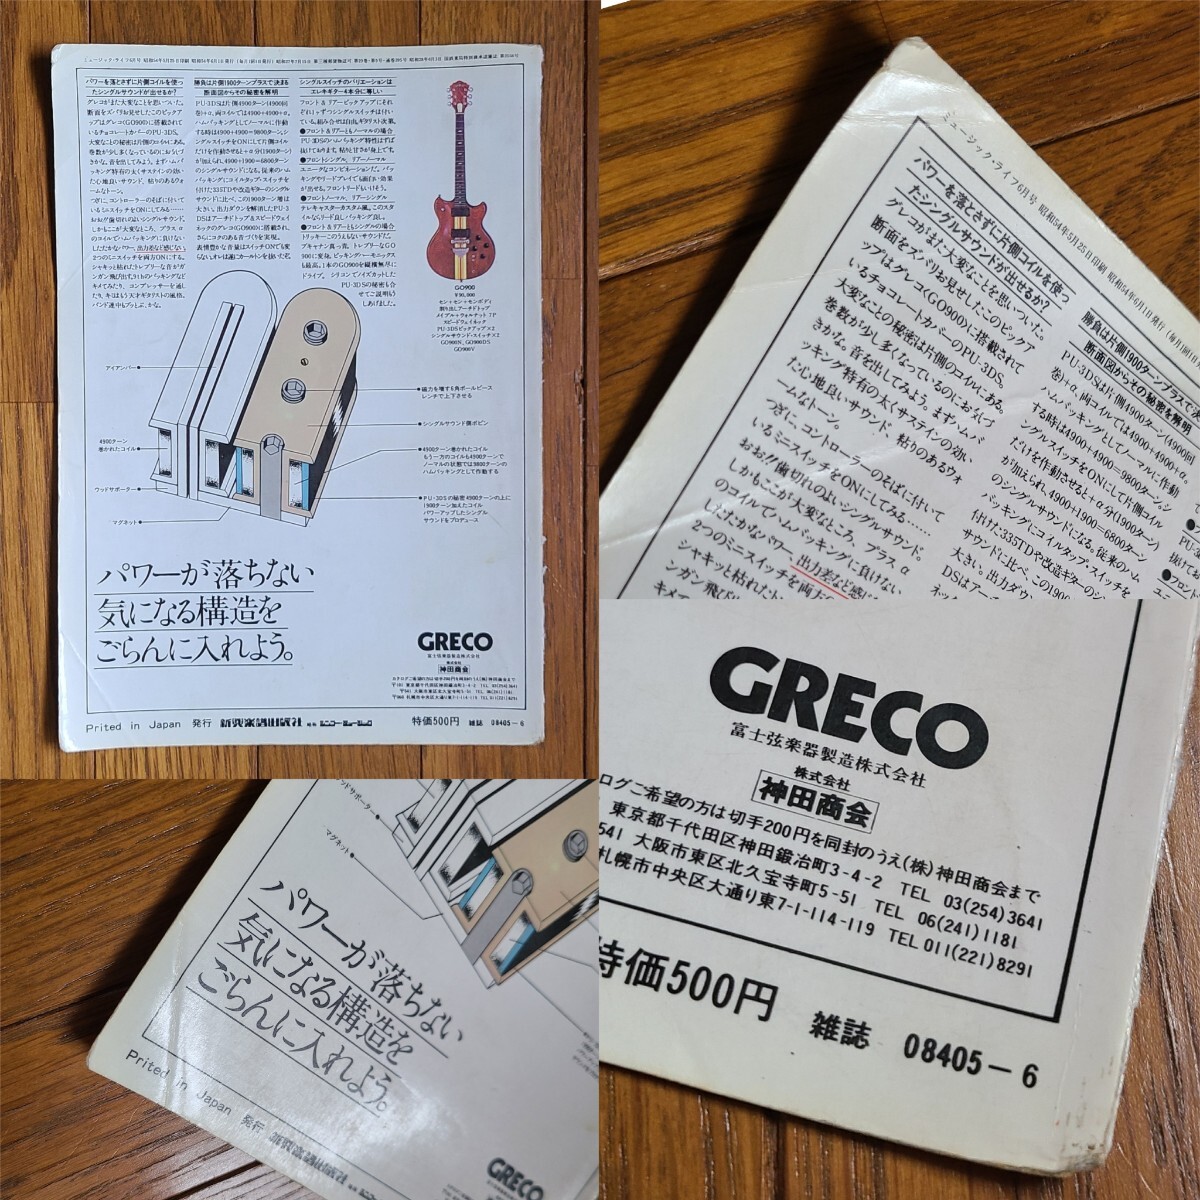 GRECO グレコ ギター広告 1978年 1979年 【切り抜き】GRECO GO GOⅡ GOⅢ モデル※雑誌裏表紙/傷みあり (裏面 日本ギブソン)の画像4